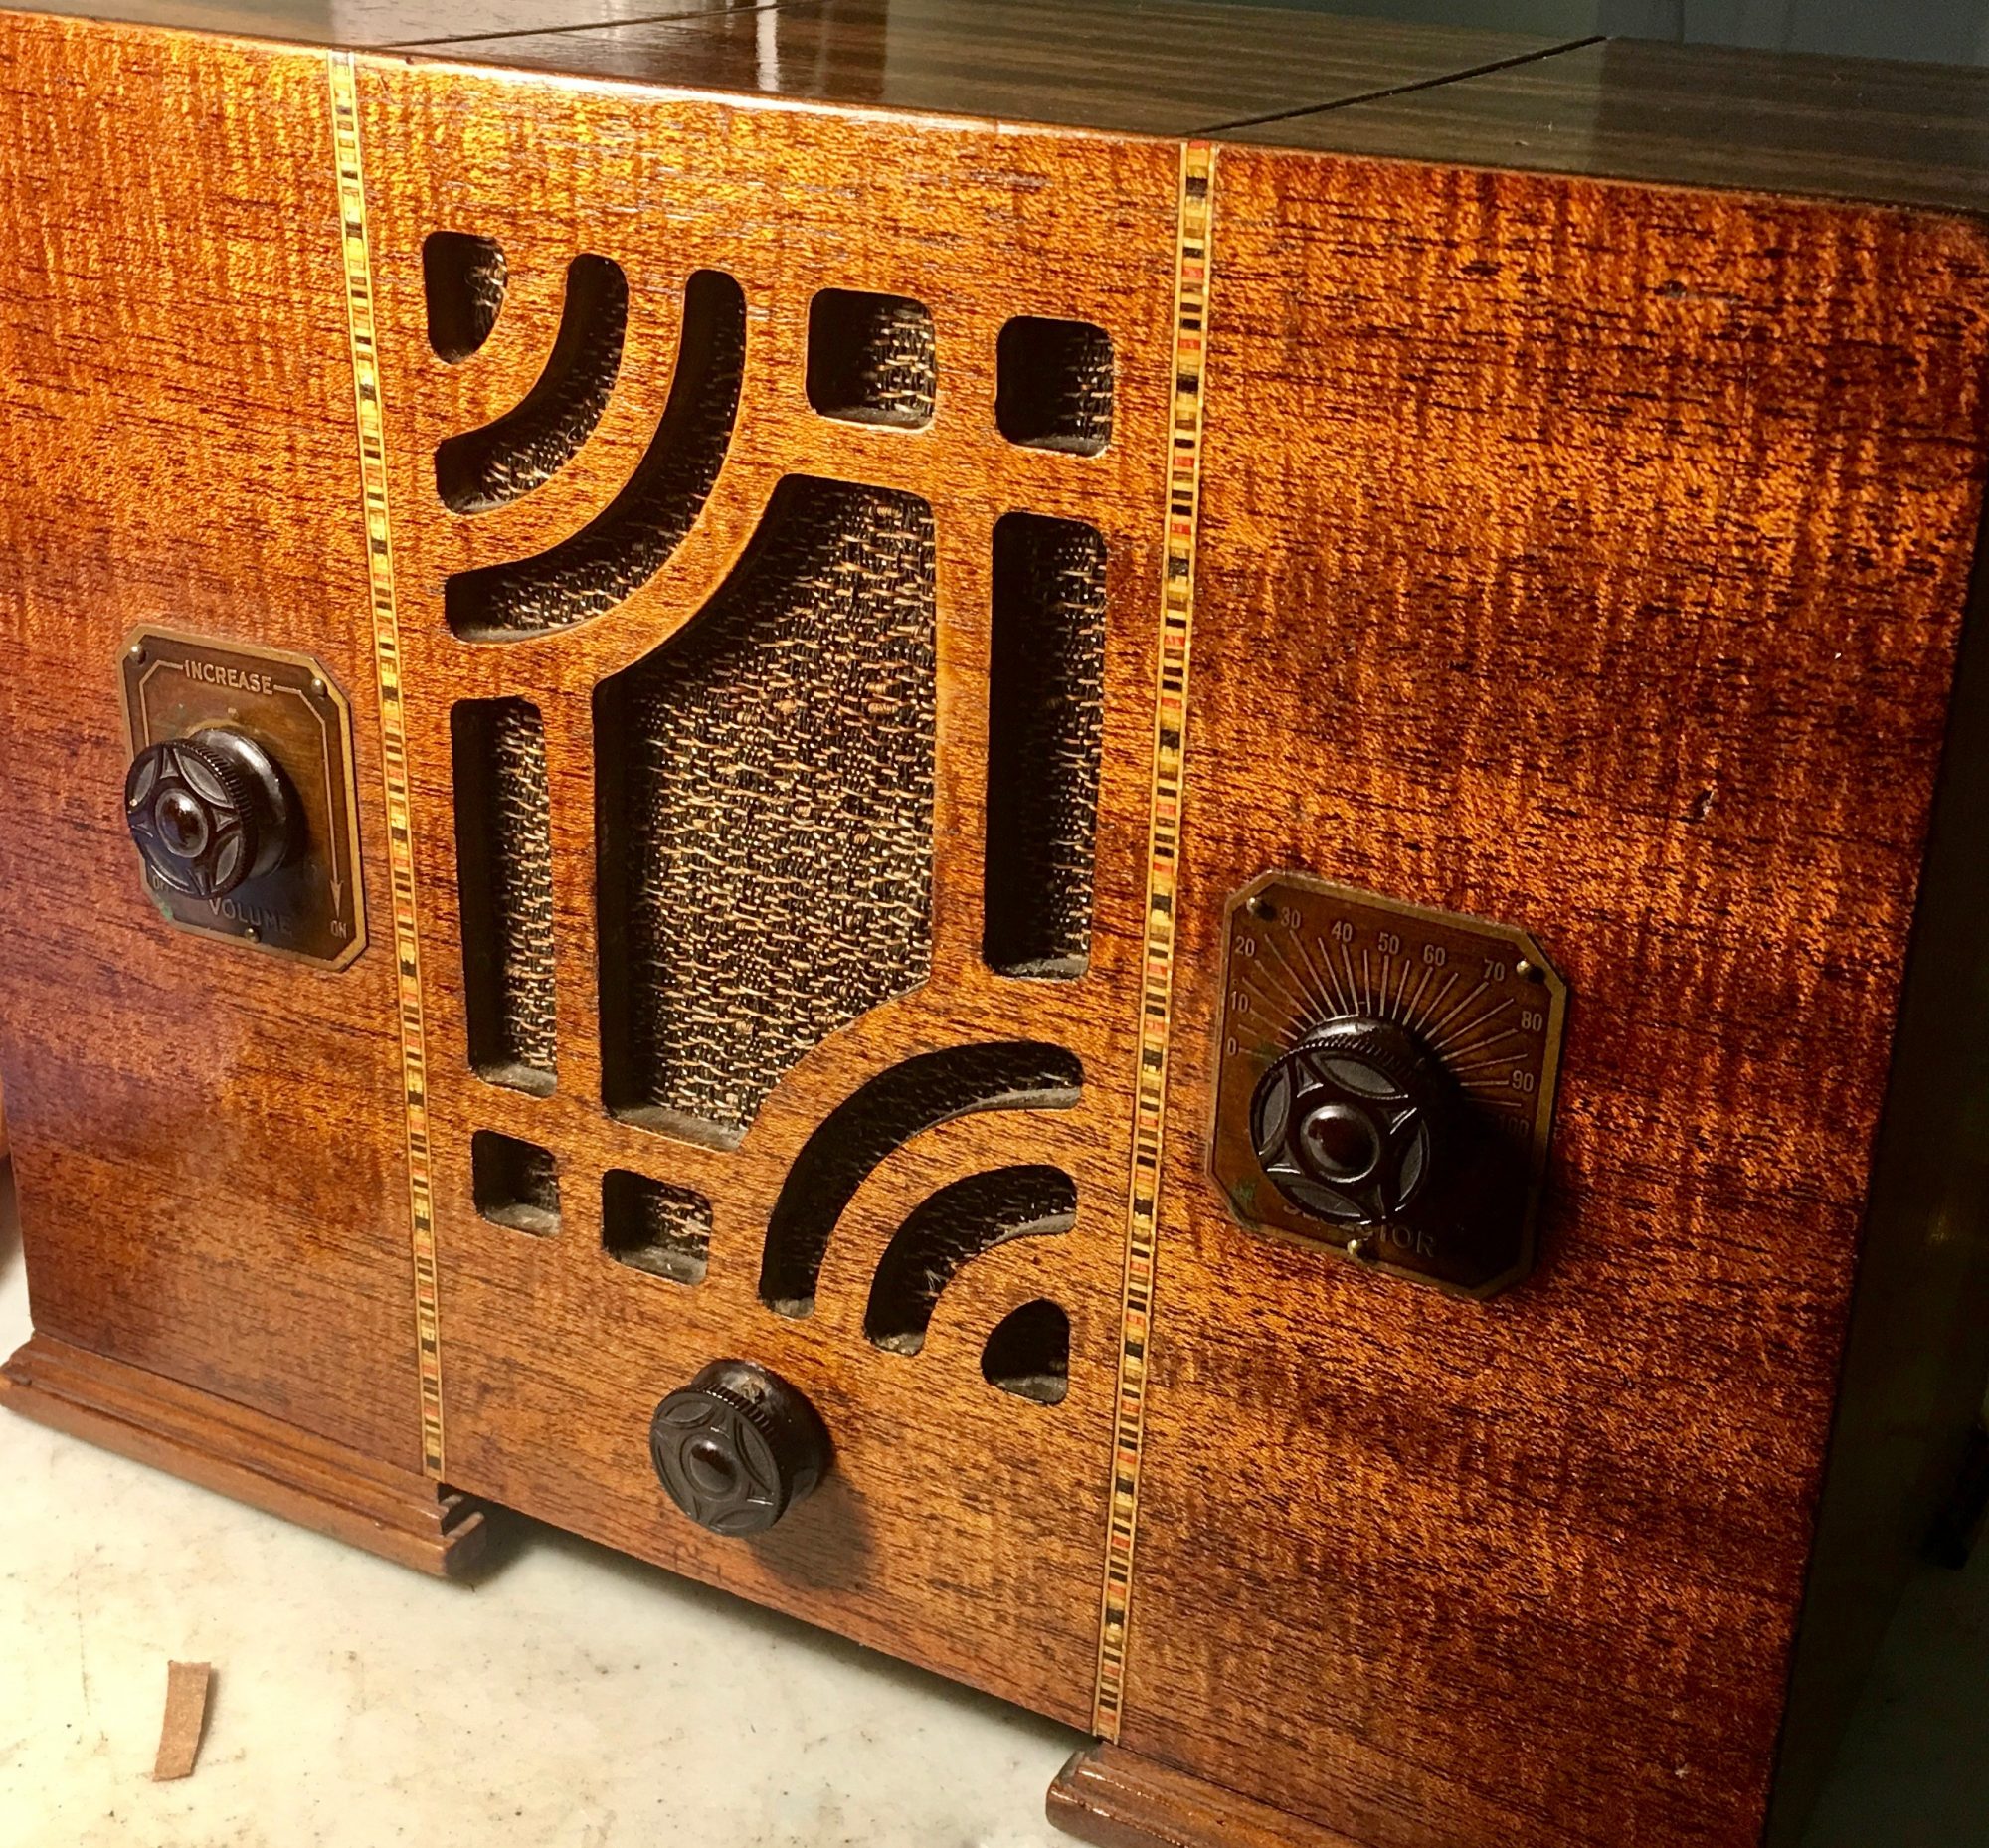 Dave's Antique Radio & TV Restorations